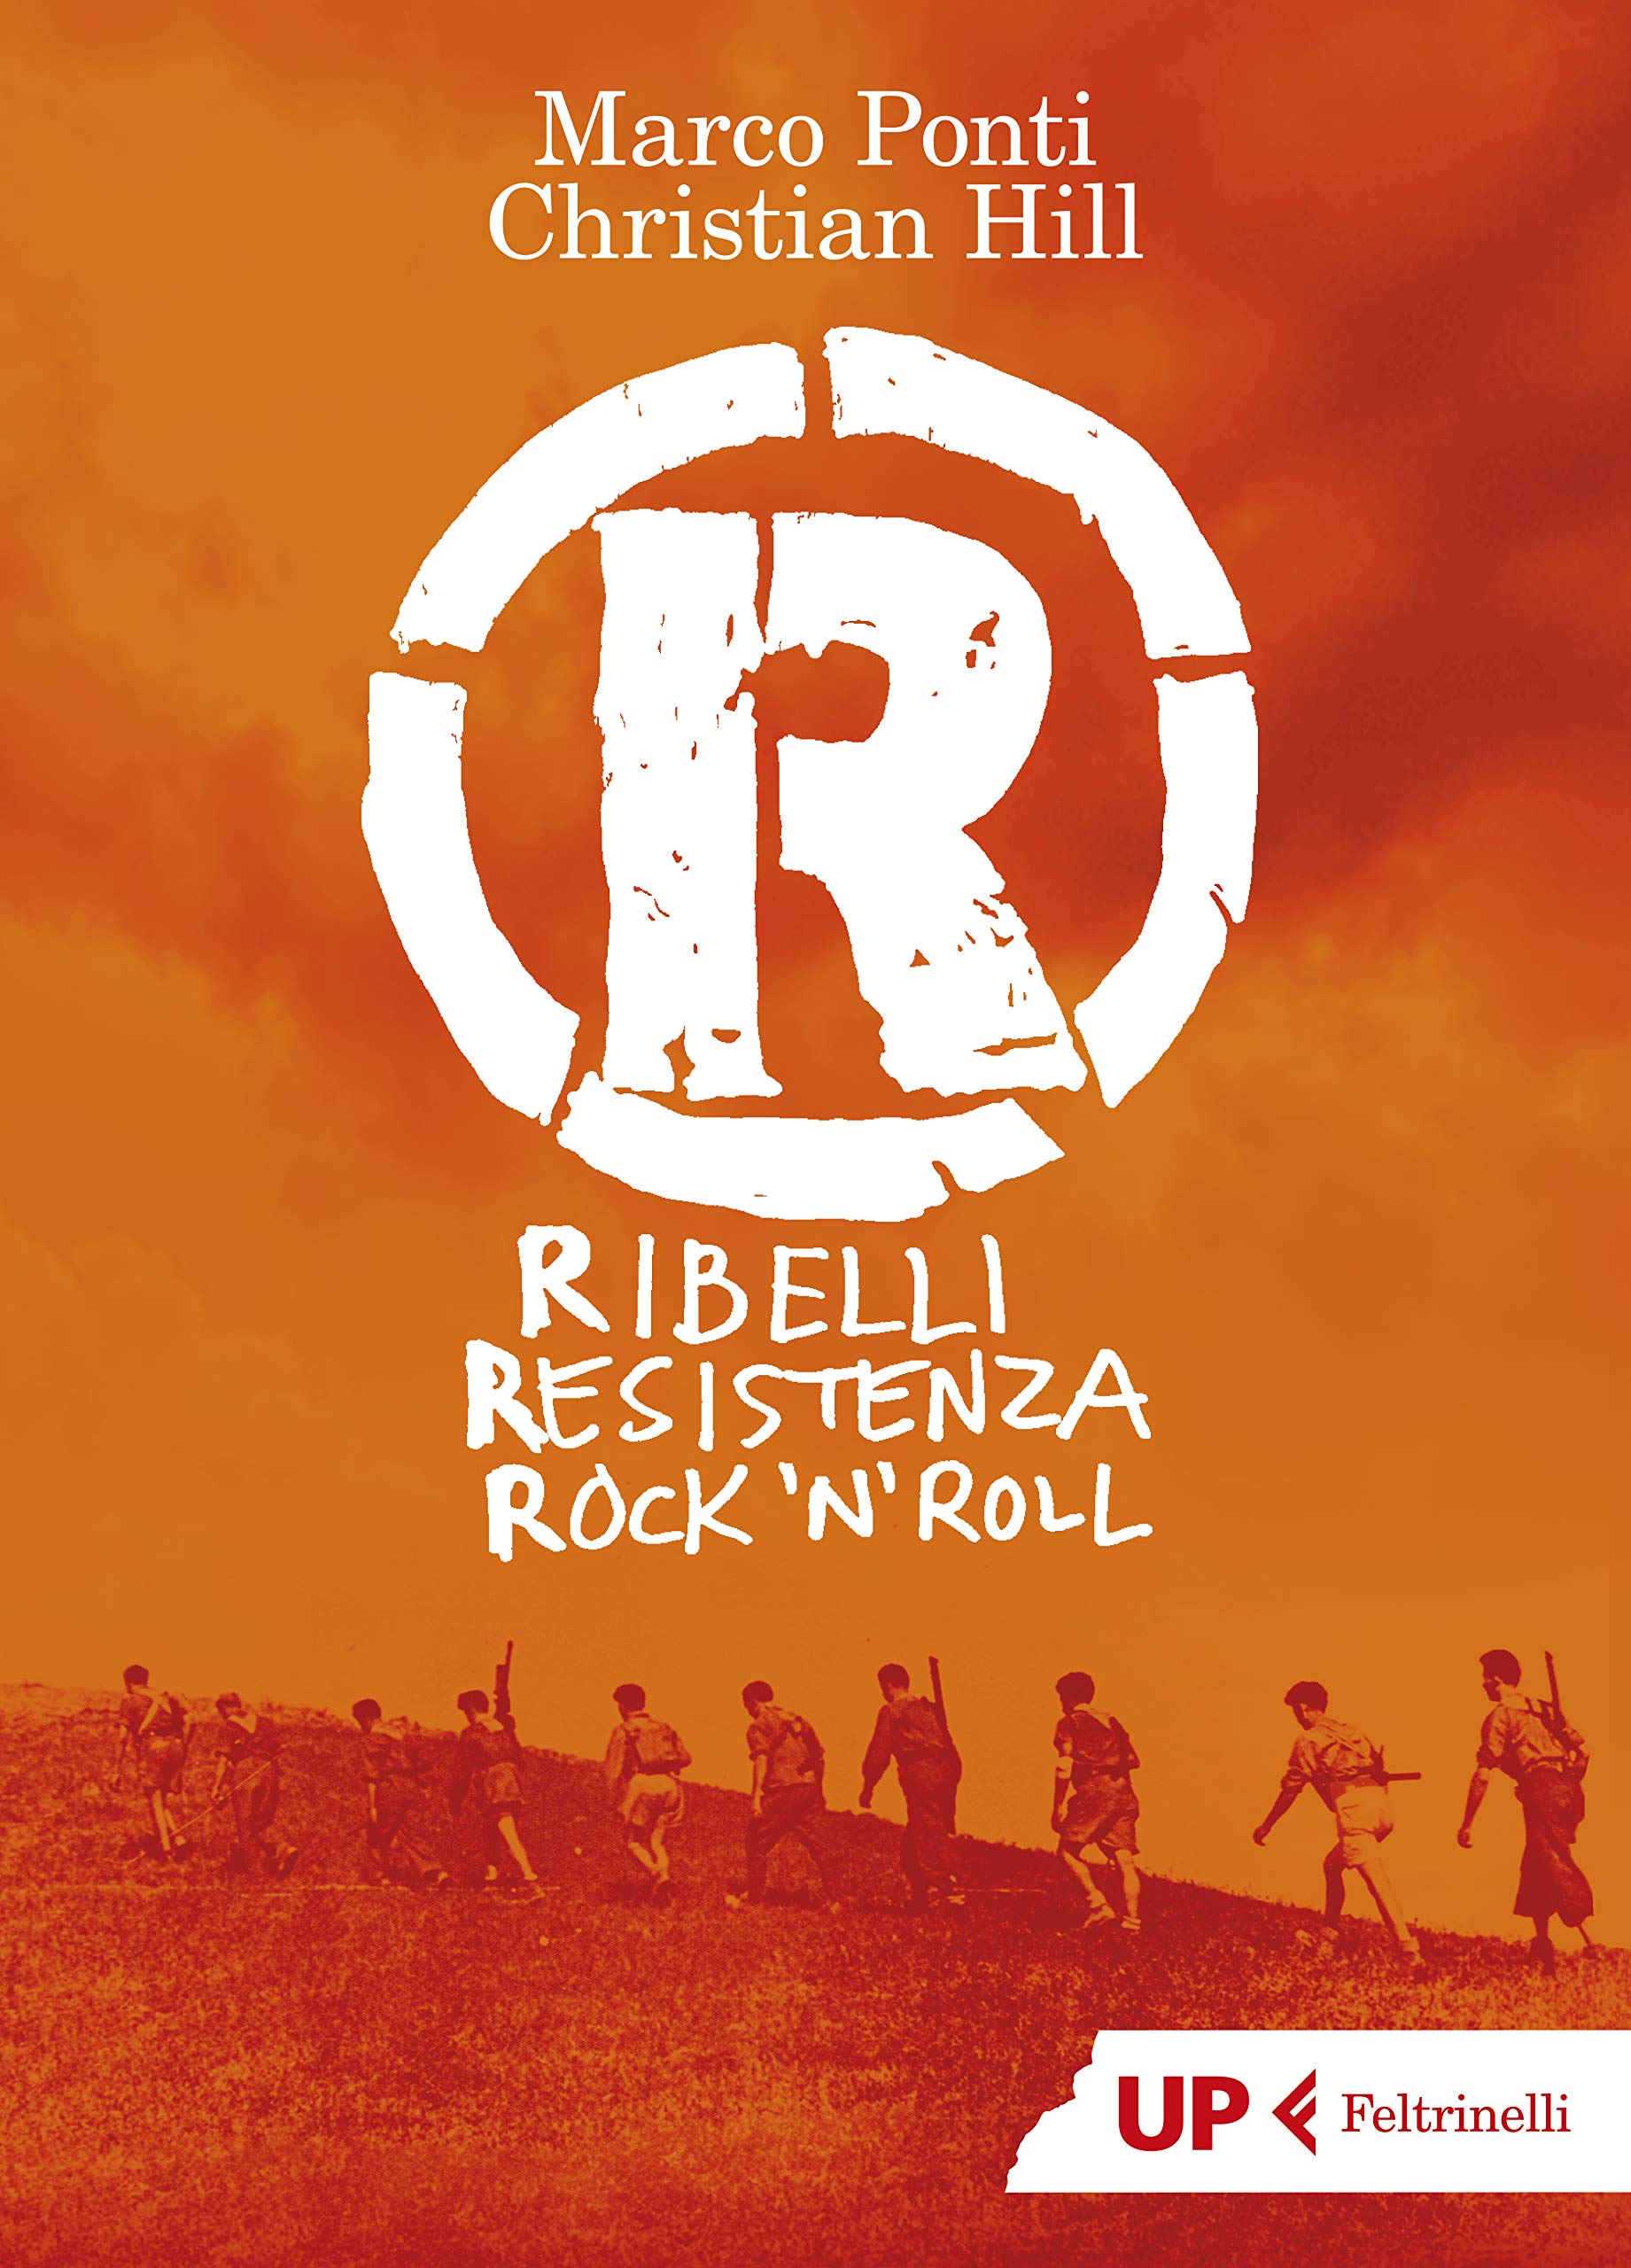 R: Ribelli Resistenza Rock'n roll